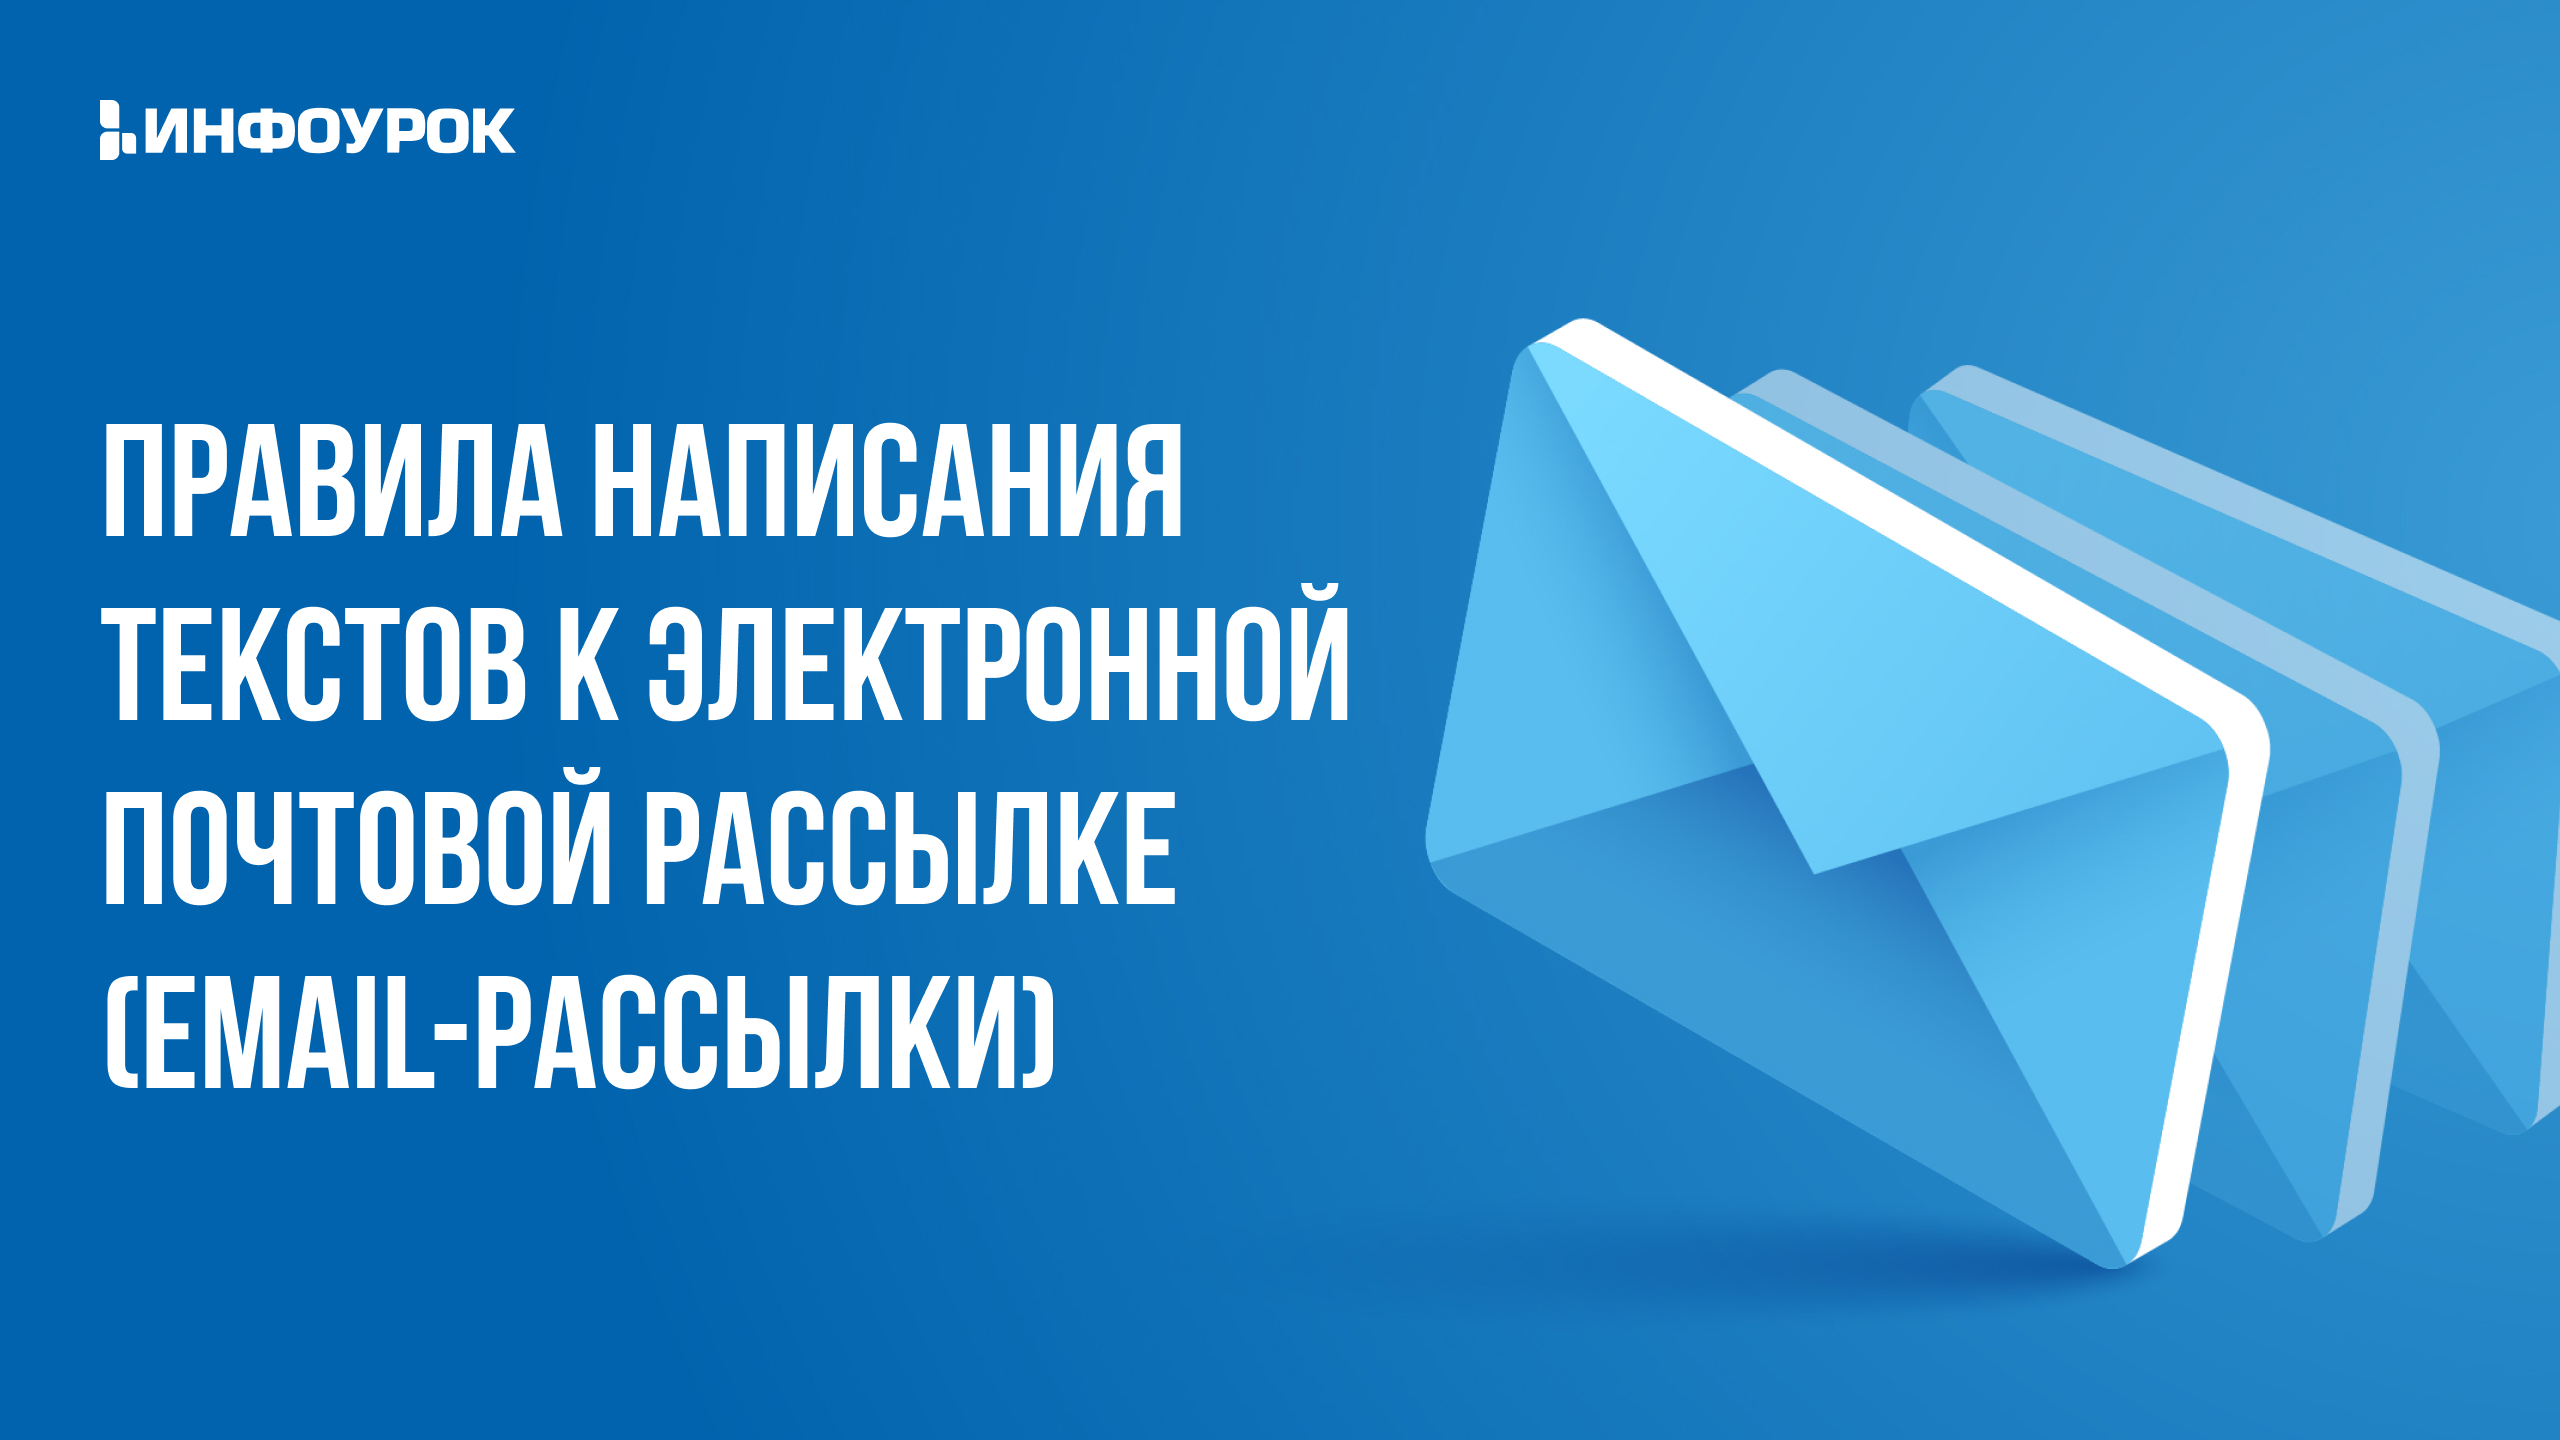 Правила написания текстов к электронной почтовой рассылке (email-рассылки)